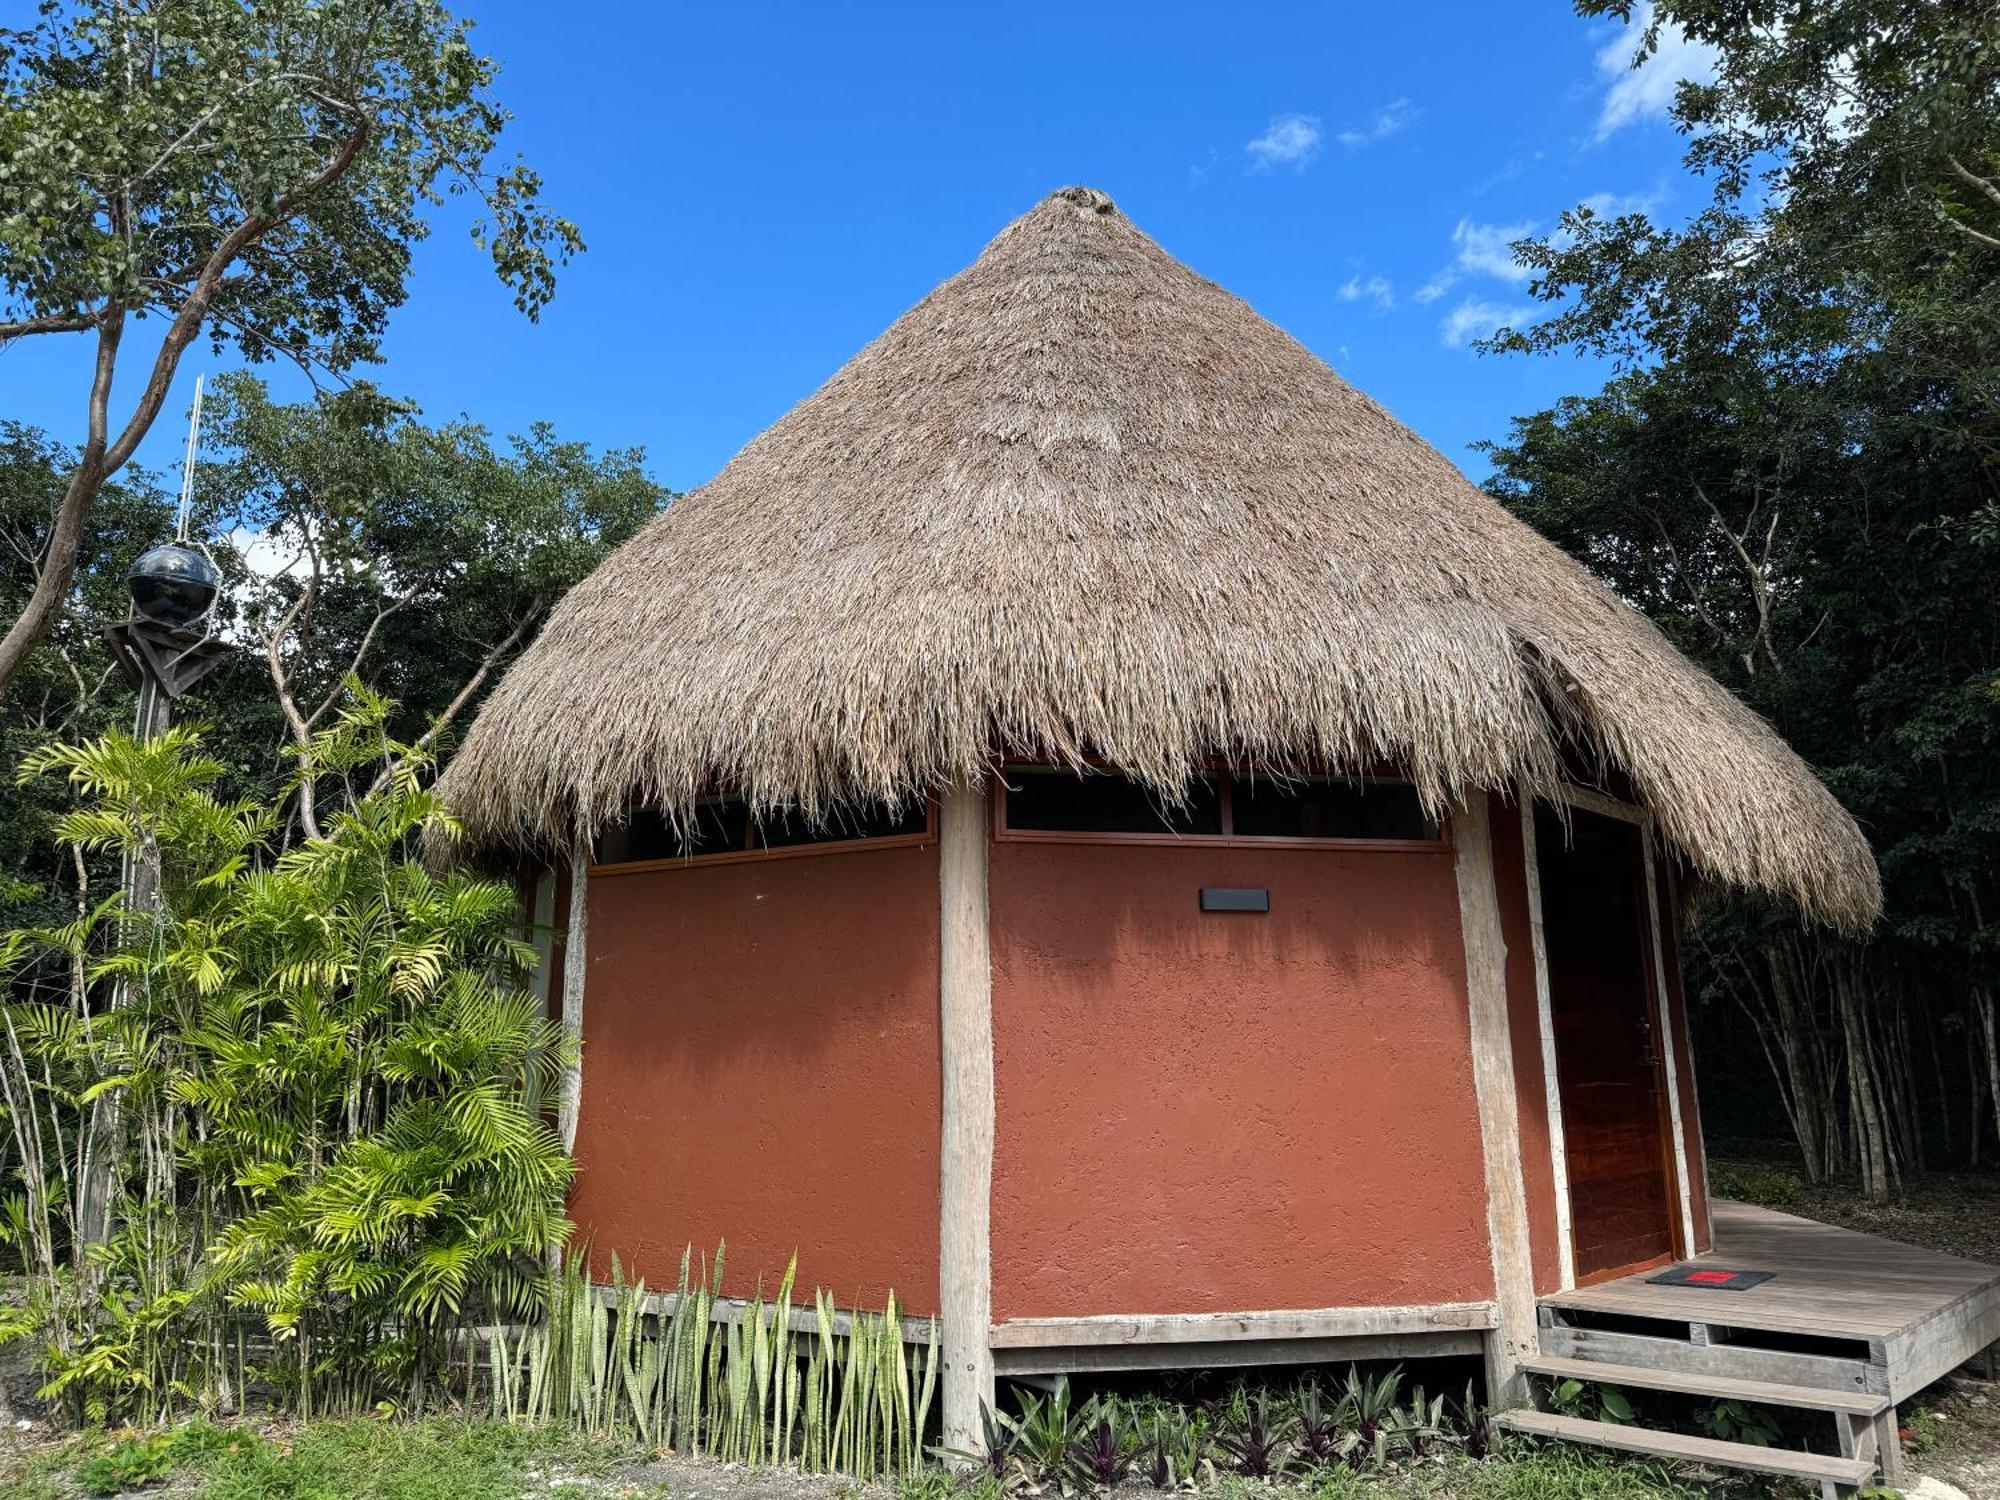 斯普希尔 Casa Kaan Calakmul酒店 外观 照片